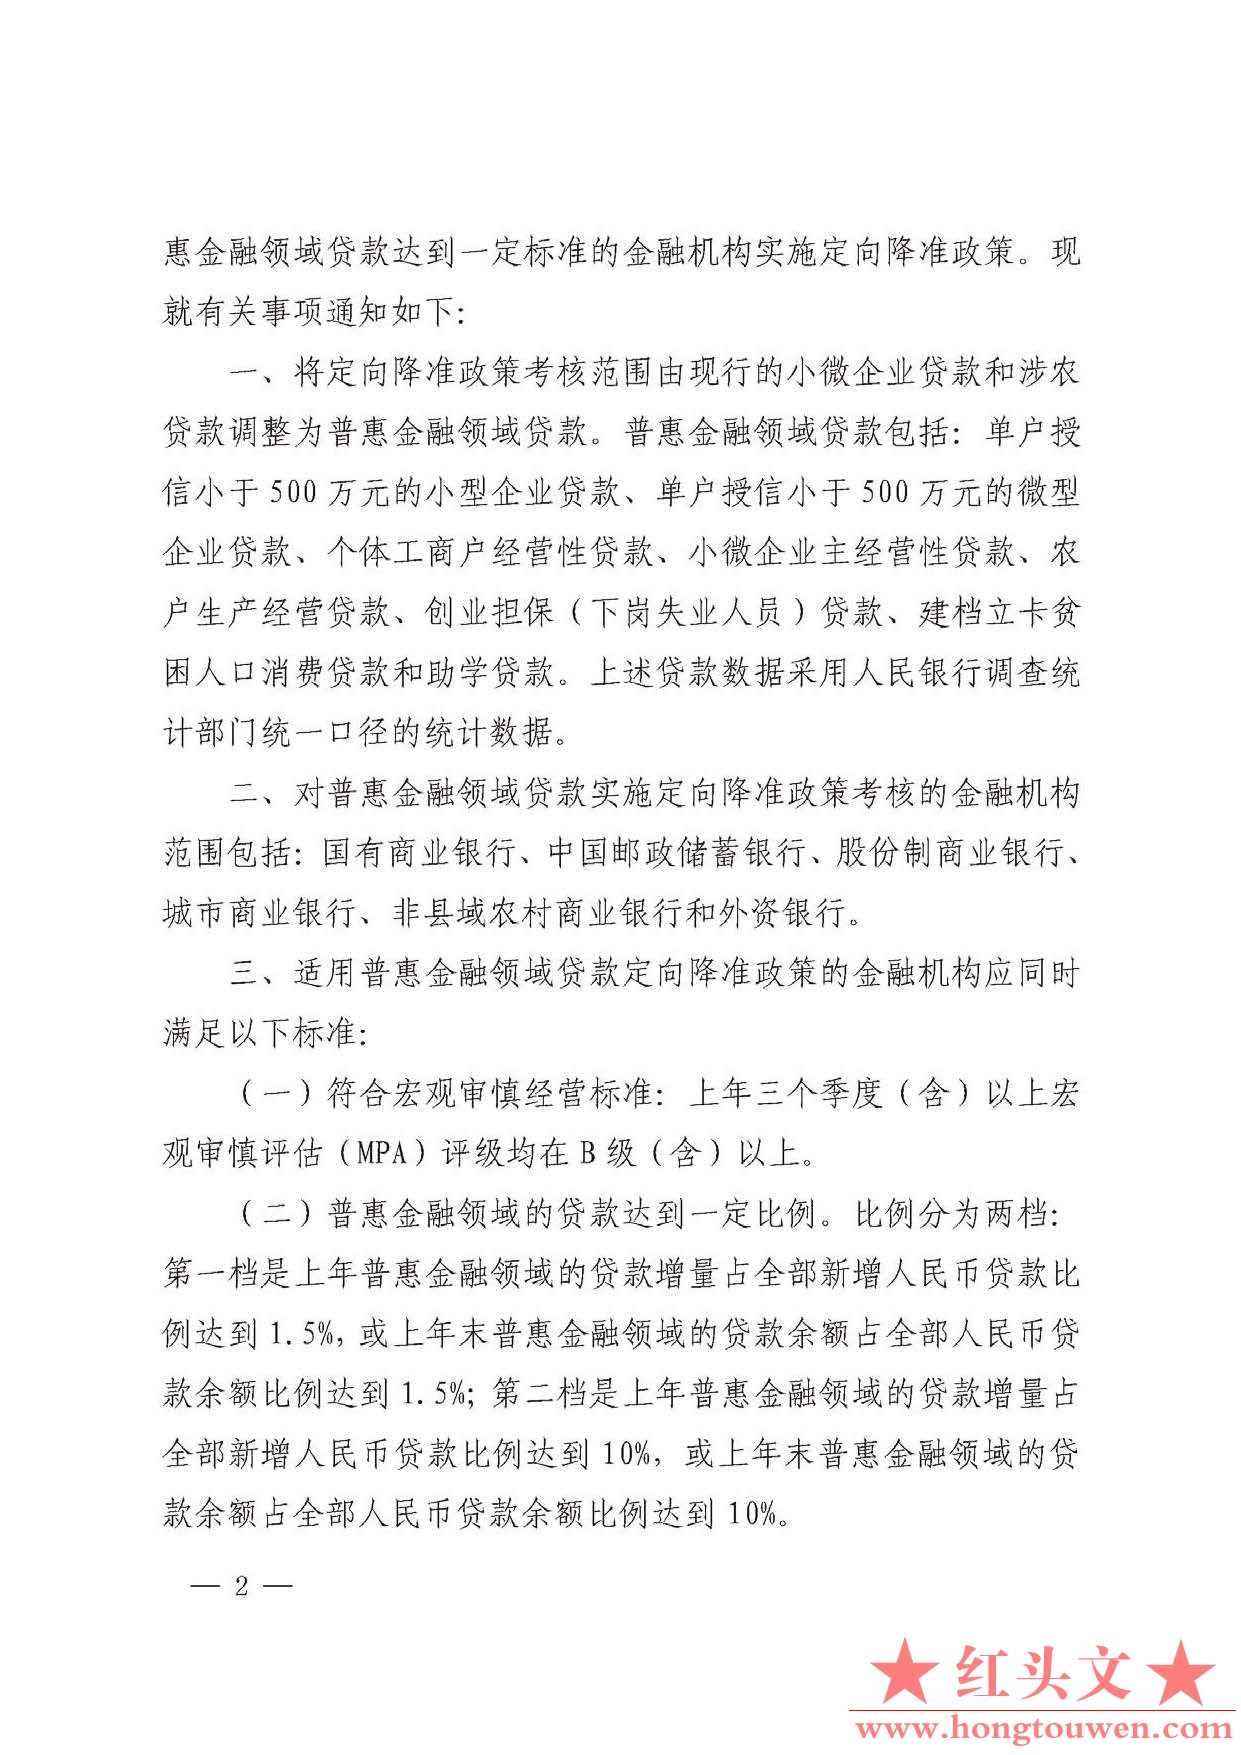 银发[2017]222号-中国人民银行关于对普惠金融实施定向降准的通知_页面_2.jpg.jpg